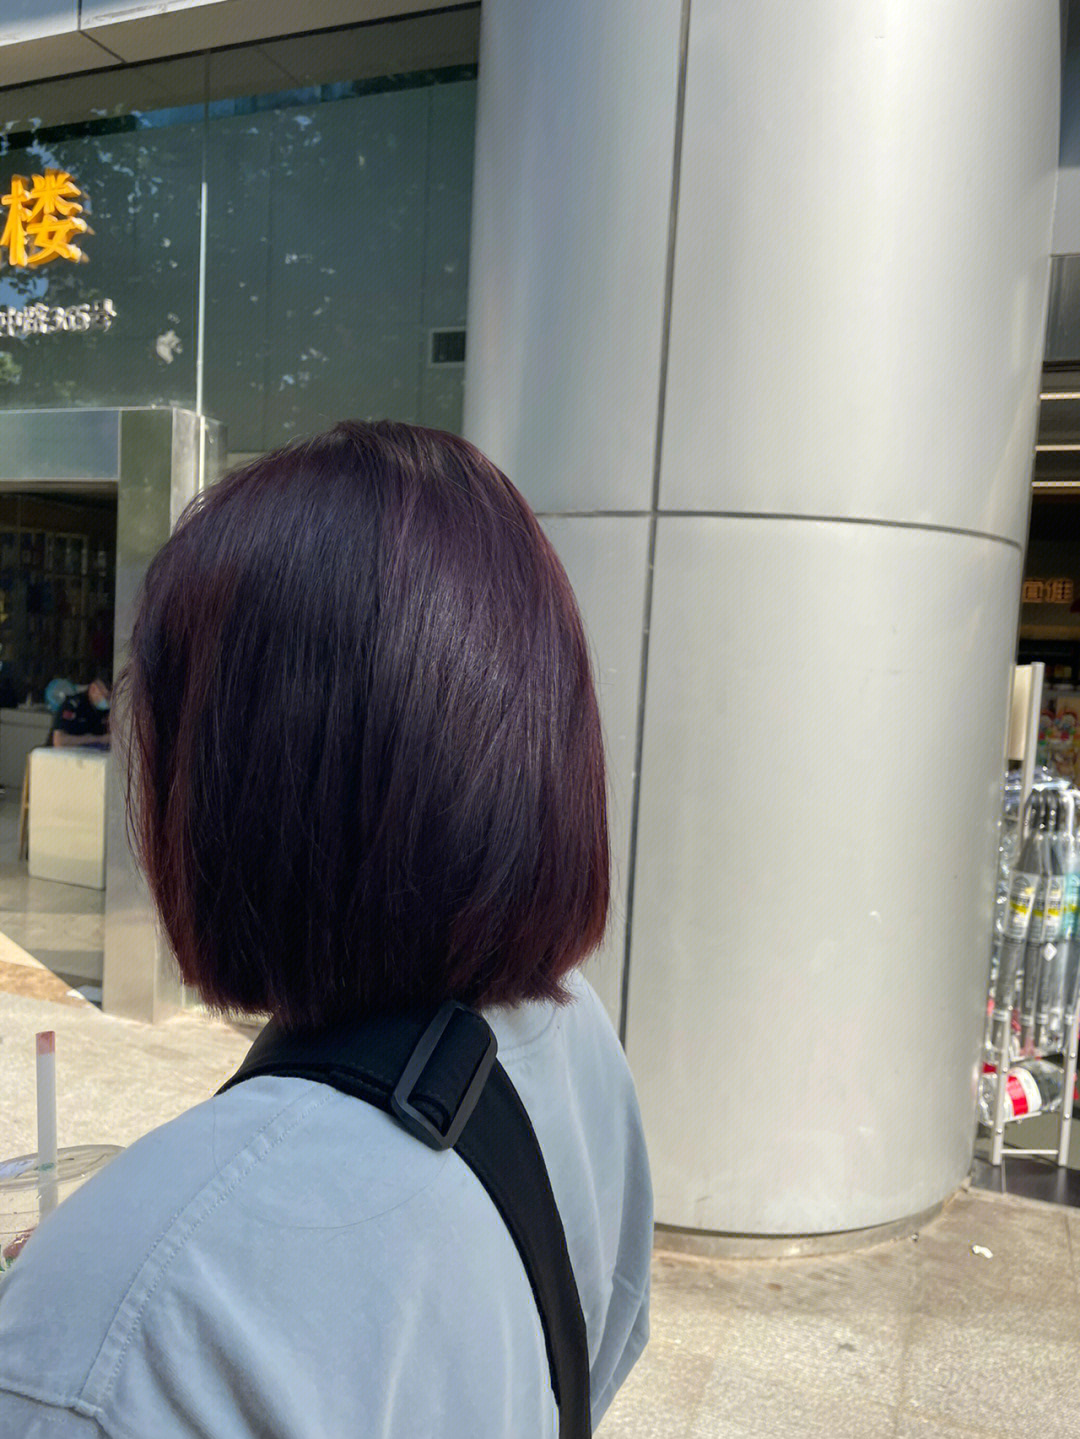 紫红色头发图片 短发图片